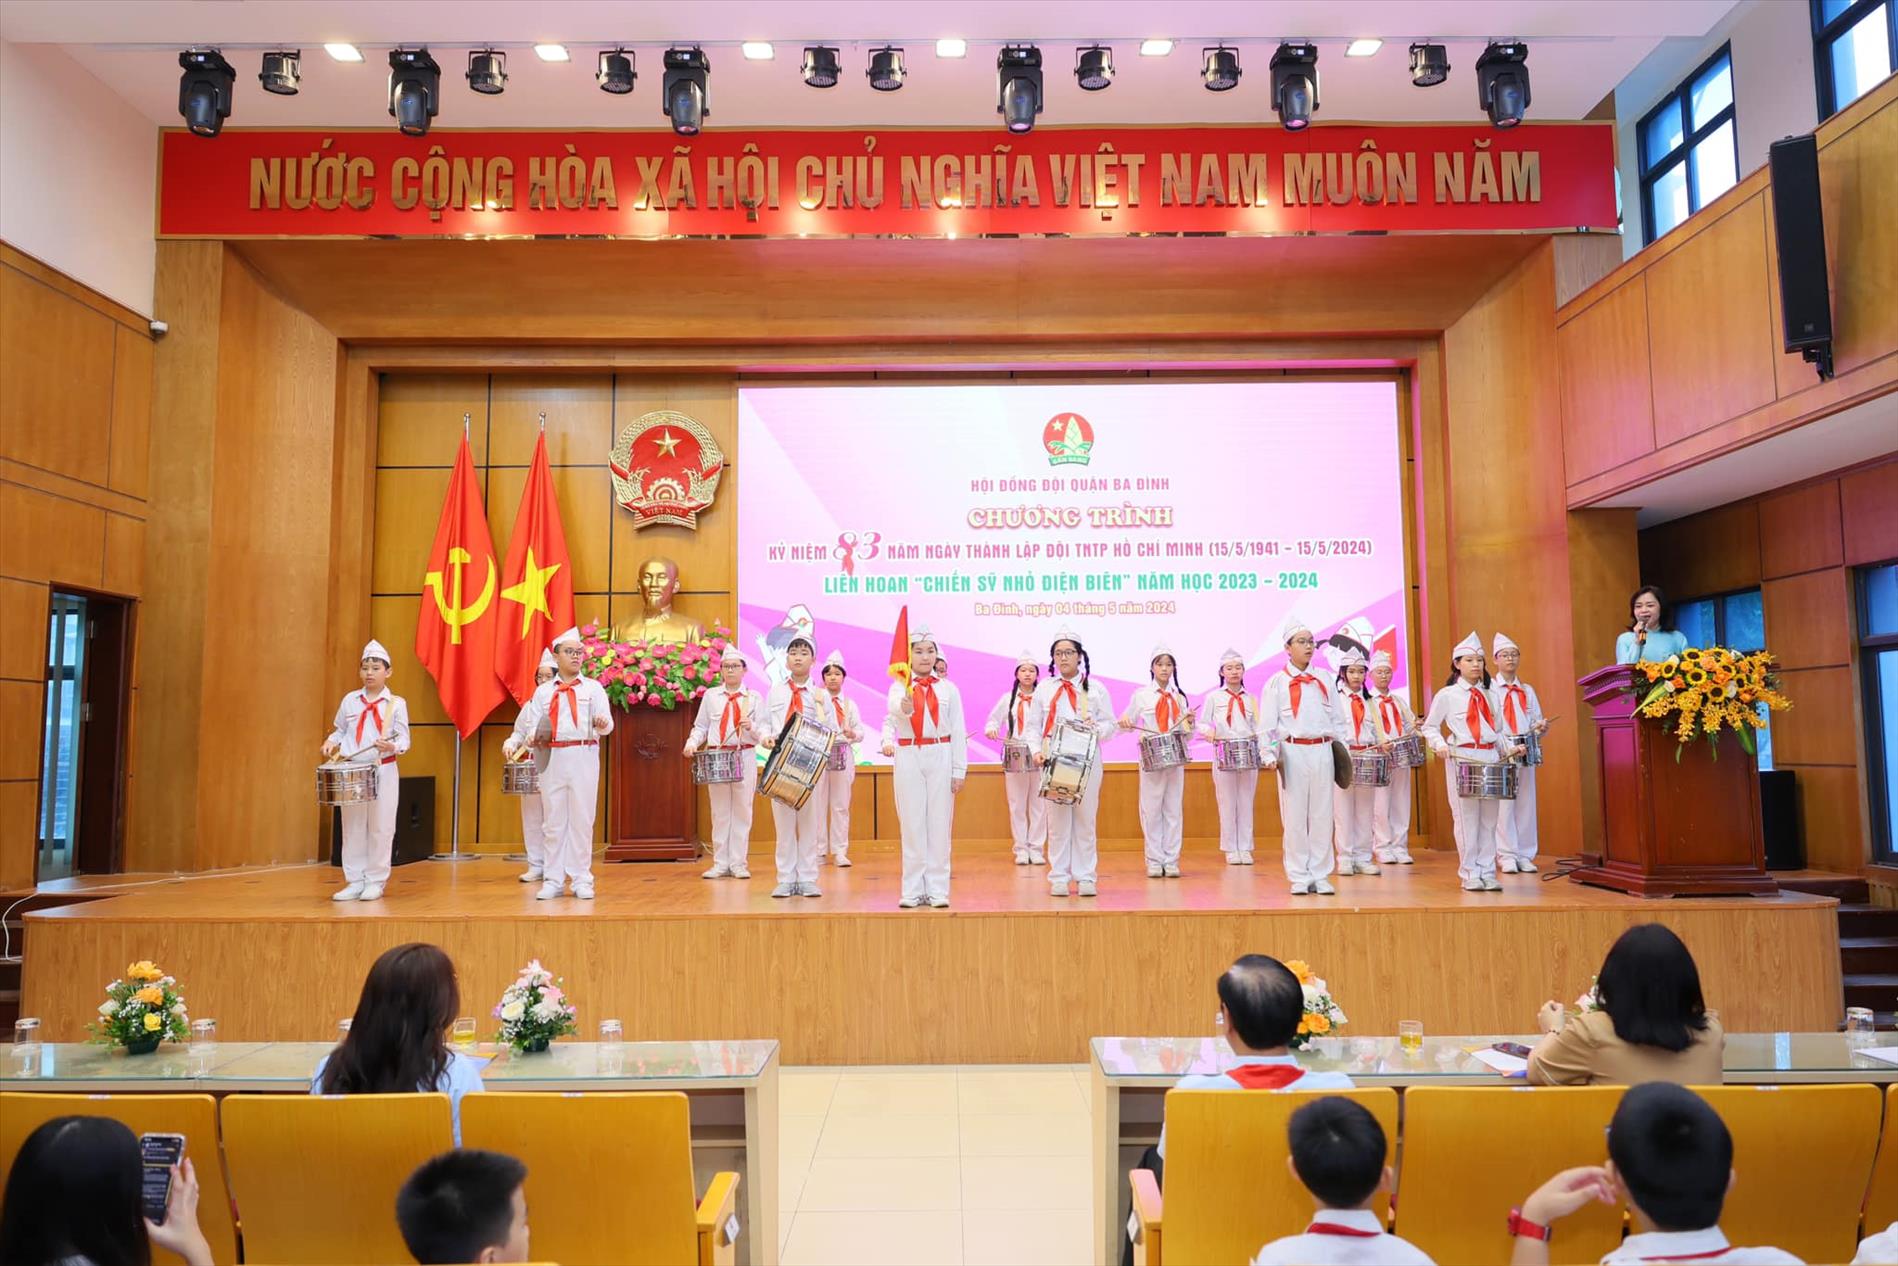 Kỷ niệm 83 năm ngày thành lập Đội TNTP Hồ Chí Minh và Liên hoan “Chiến sĩ nhỏ Điện Biên” năm học 2023 – 2024 quận Ba Đình